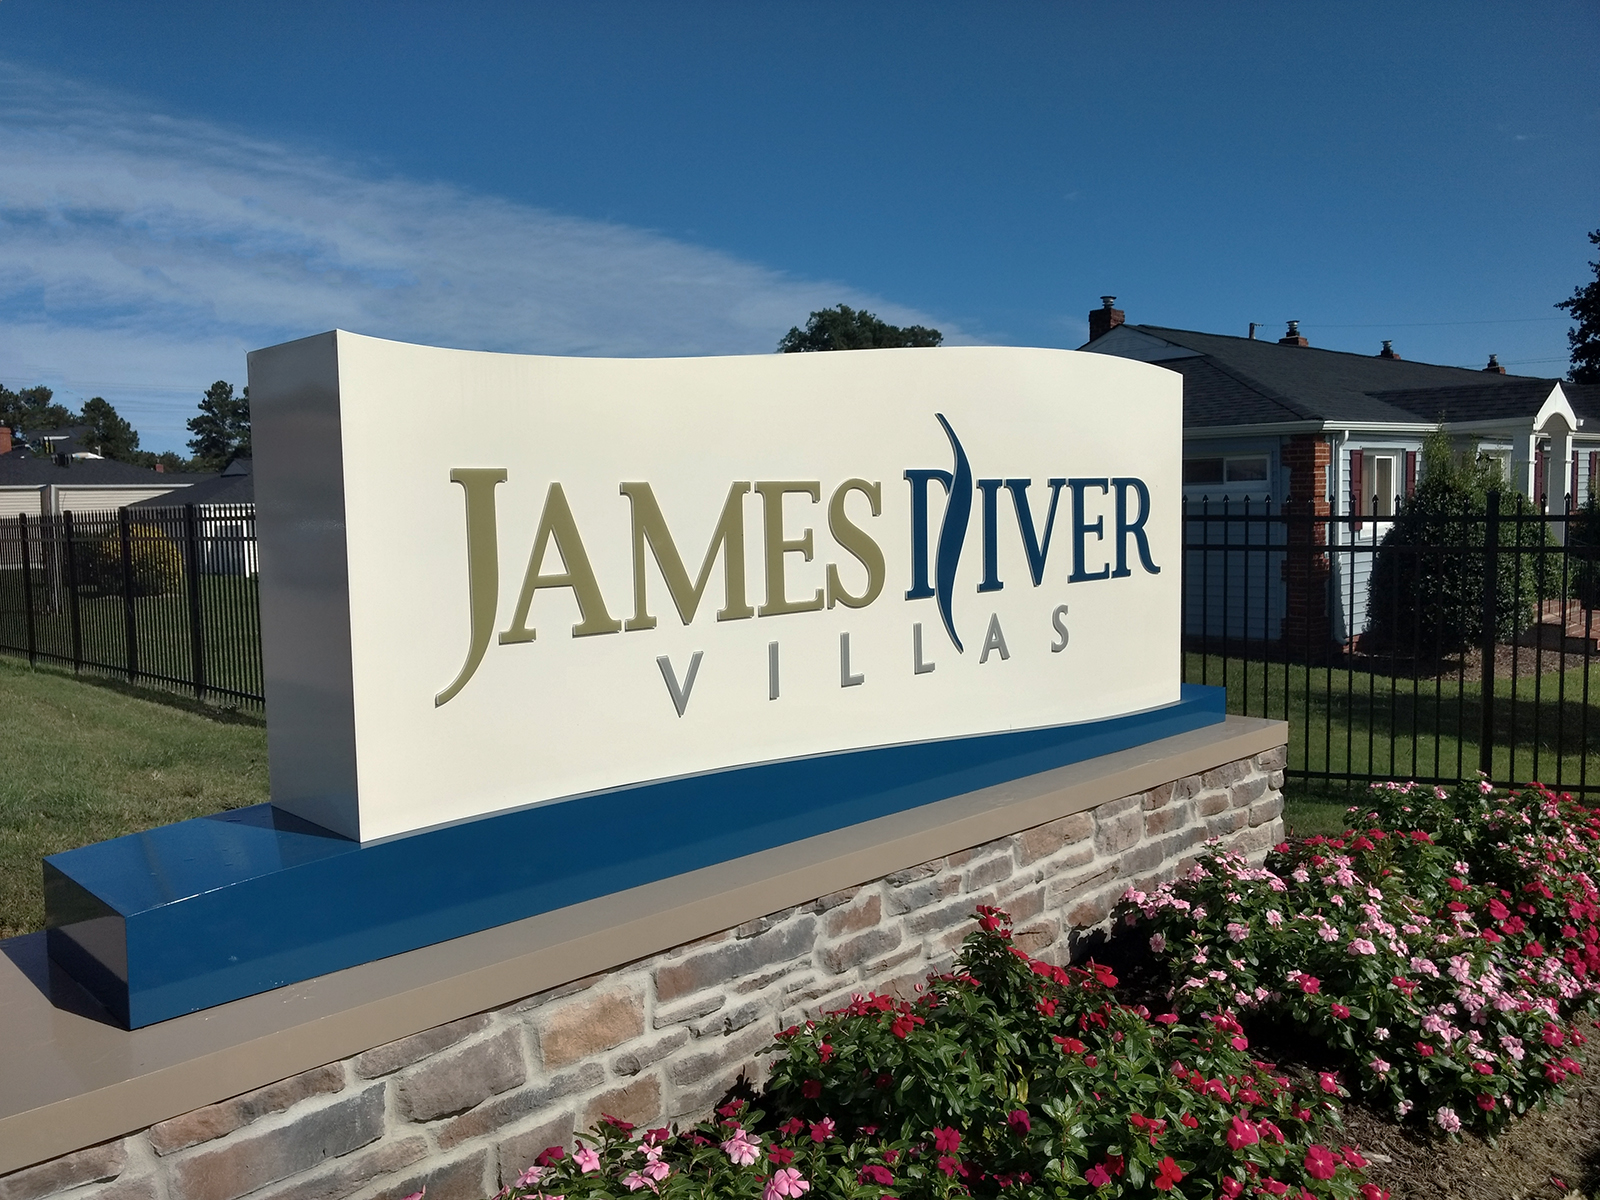 James River Villas Idf Pensign, James River Landscaping